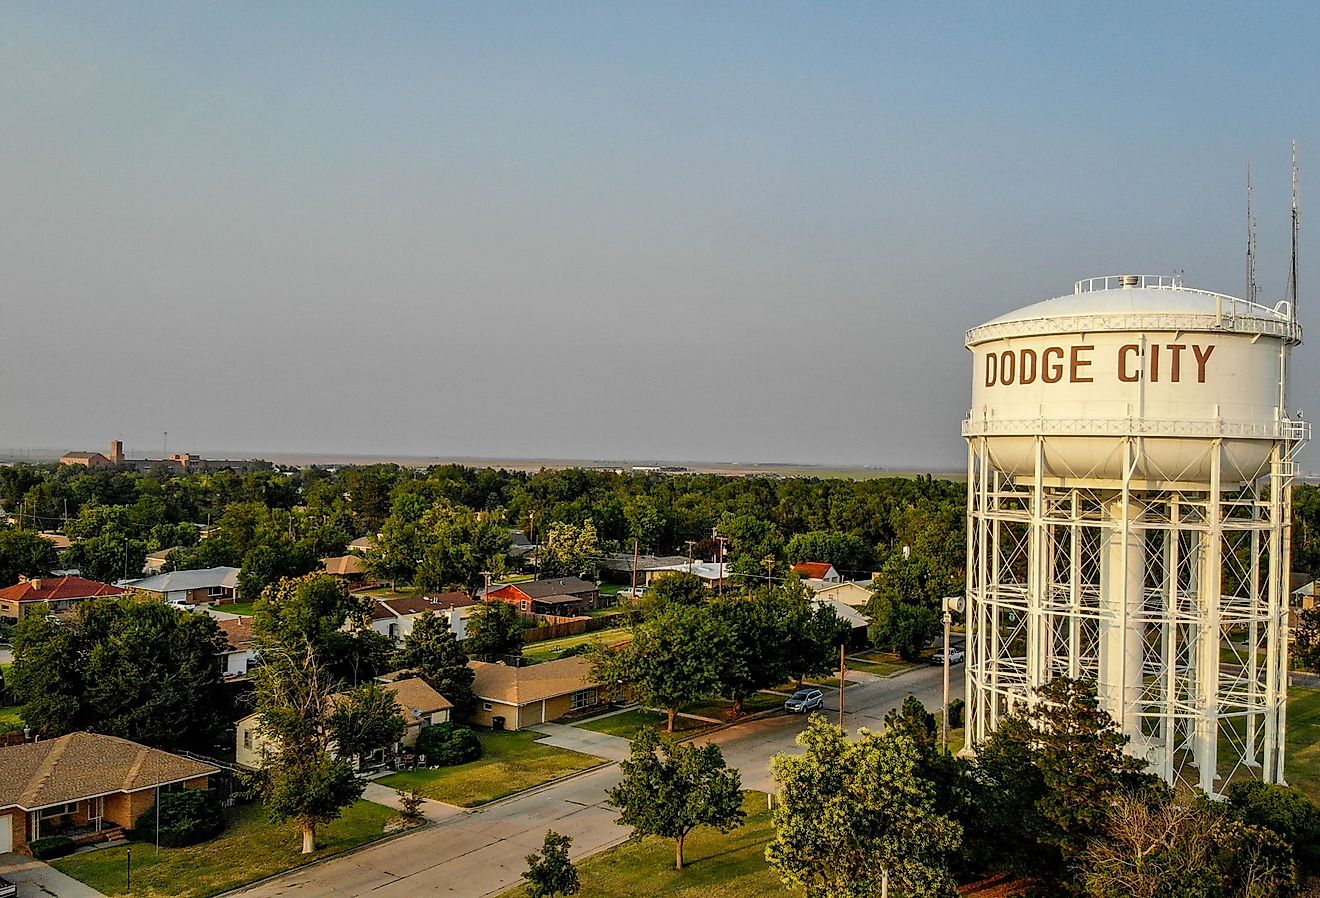 Aerial view of Dodge City, Kansas. Image credit Eduardo Medrano via Shutterstock.